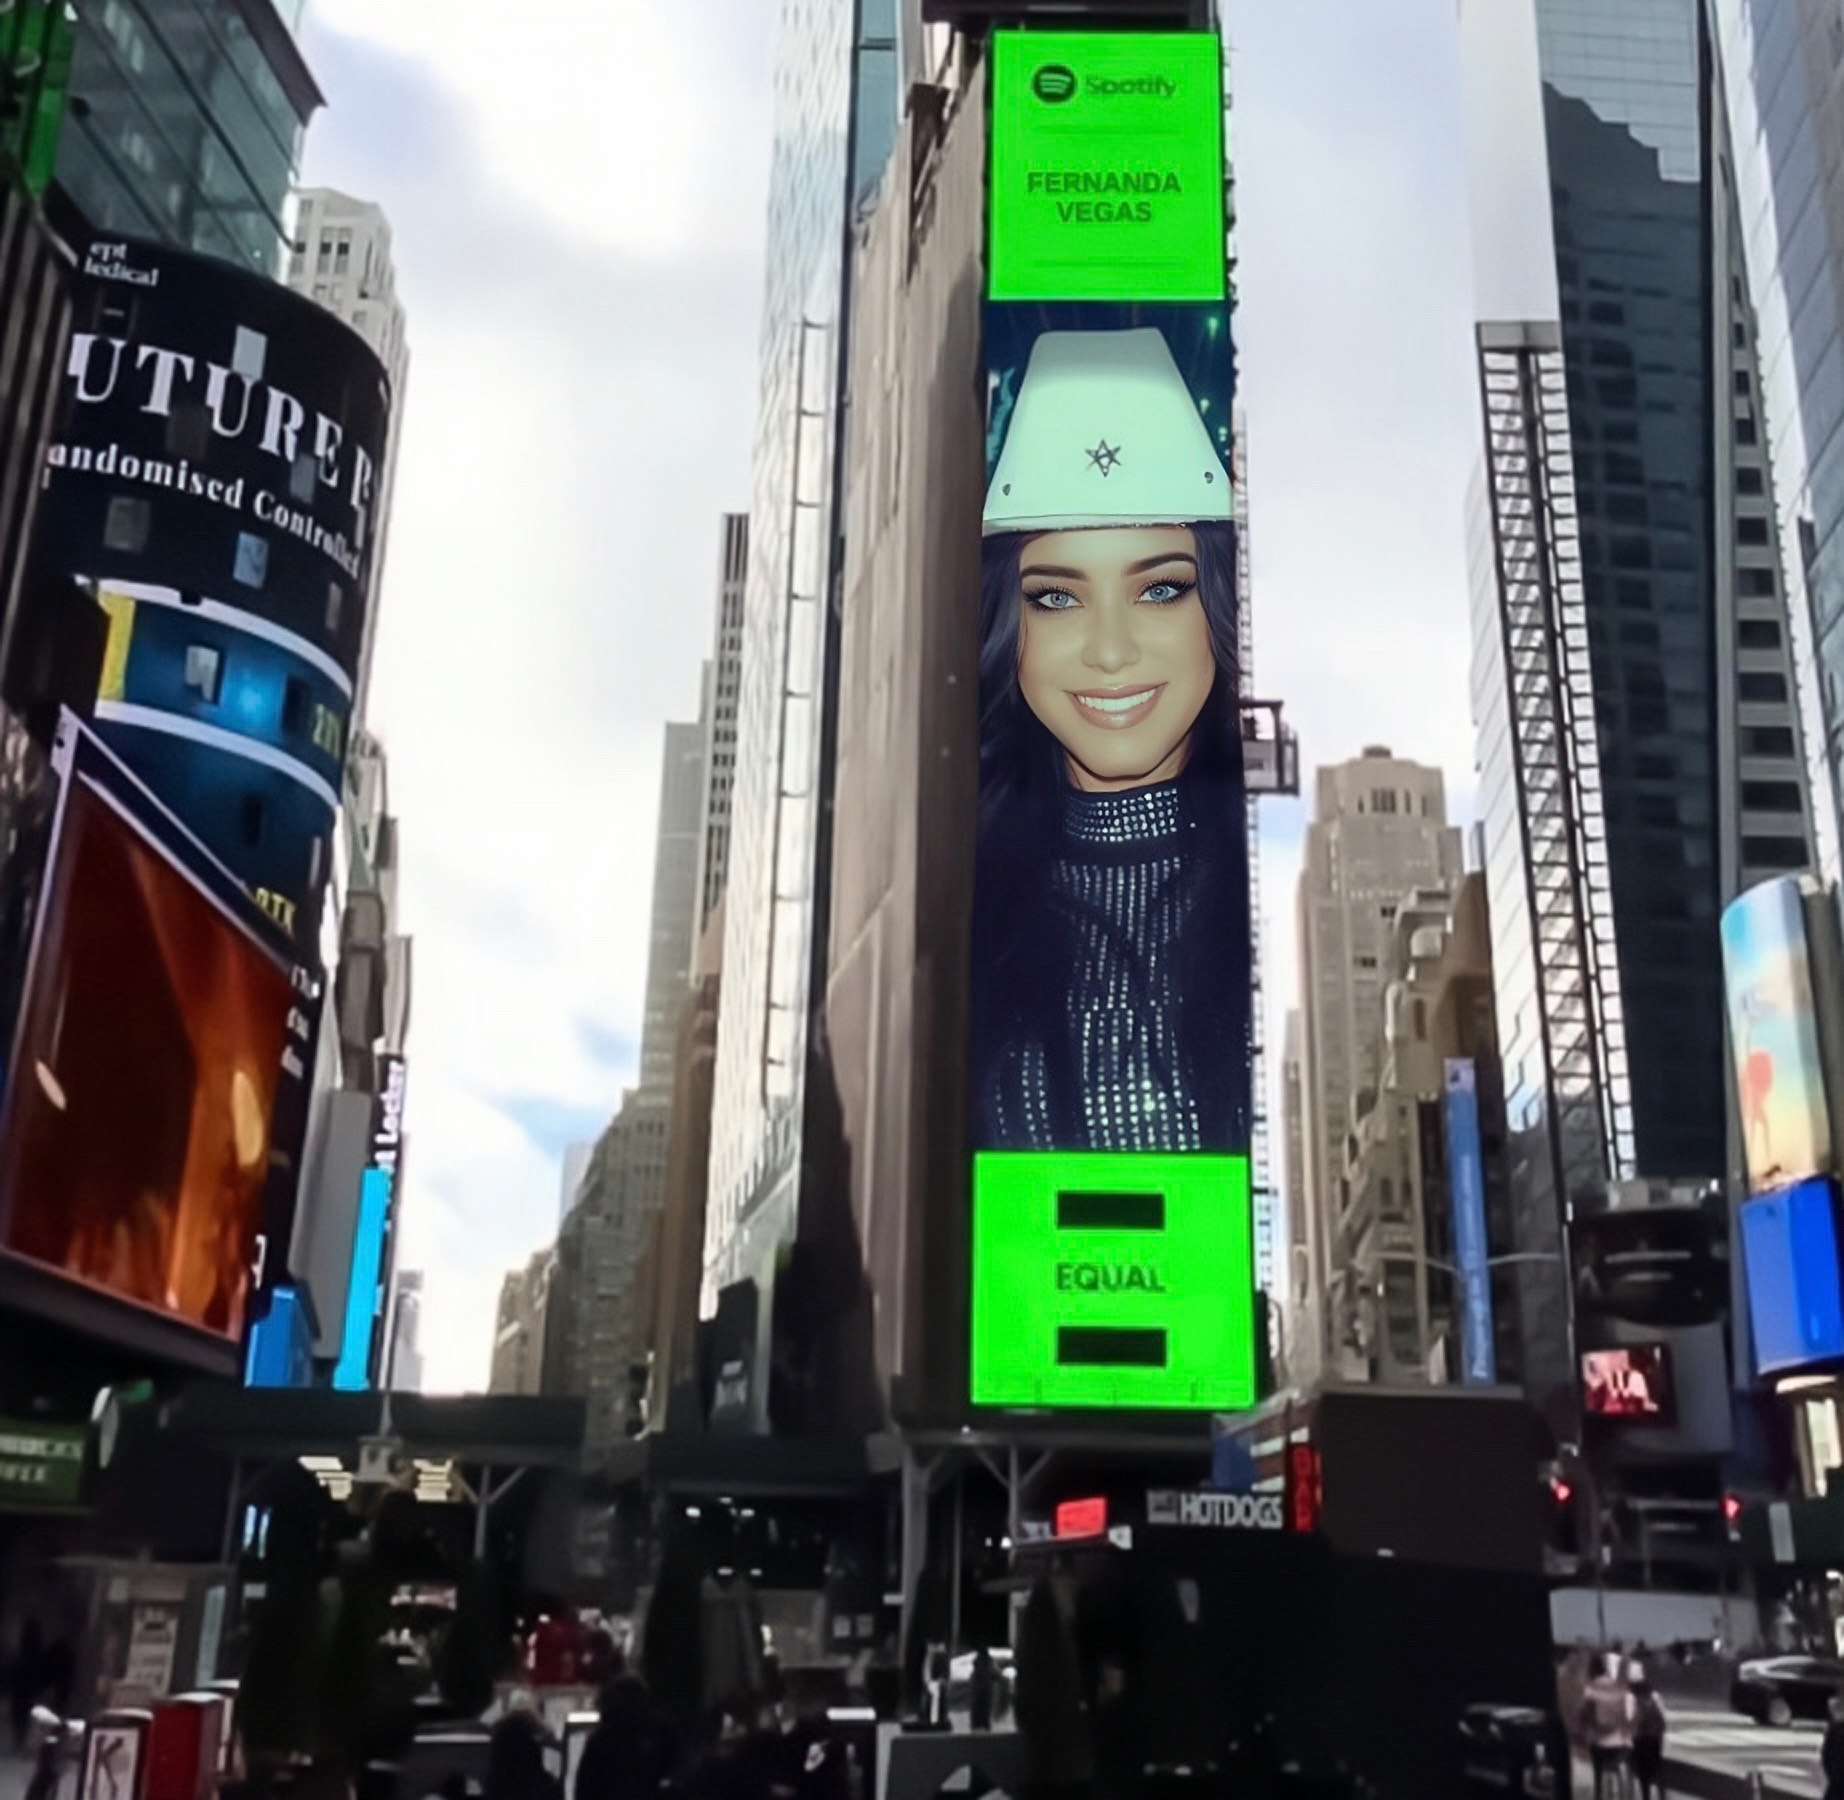 Fernanda Vegas aparece em anúncio no telão da Times Square, em Nova York